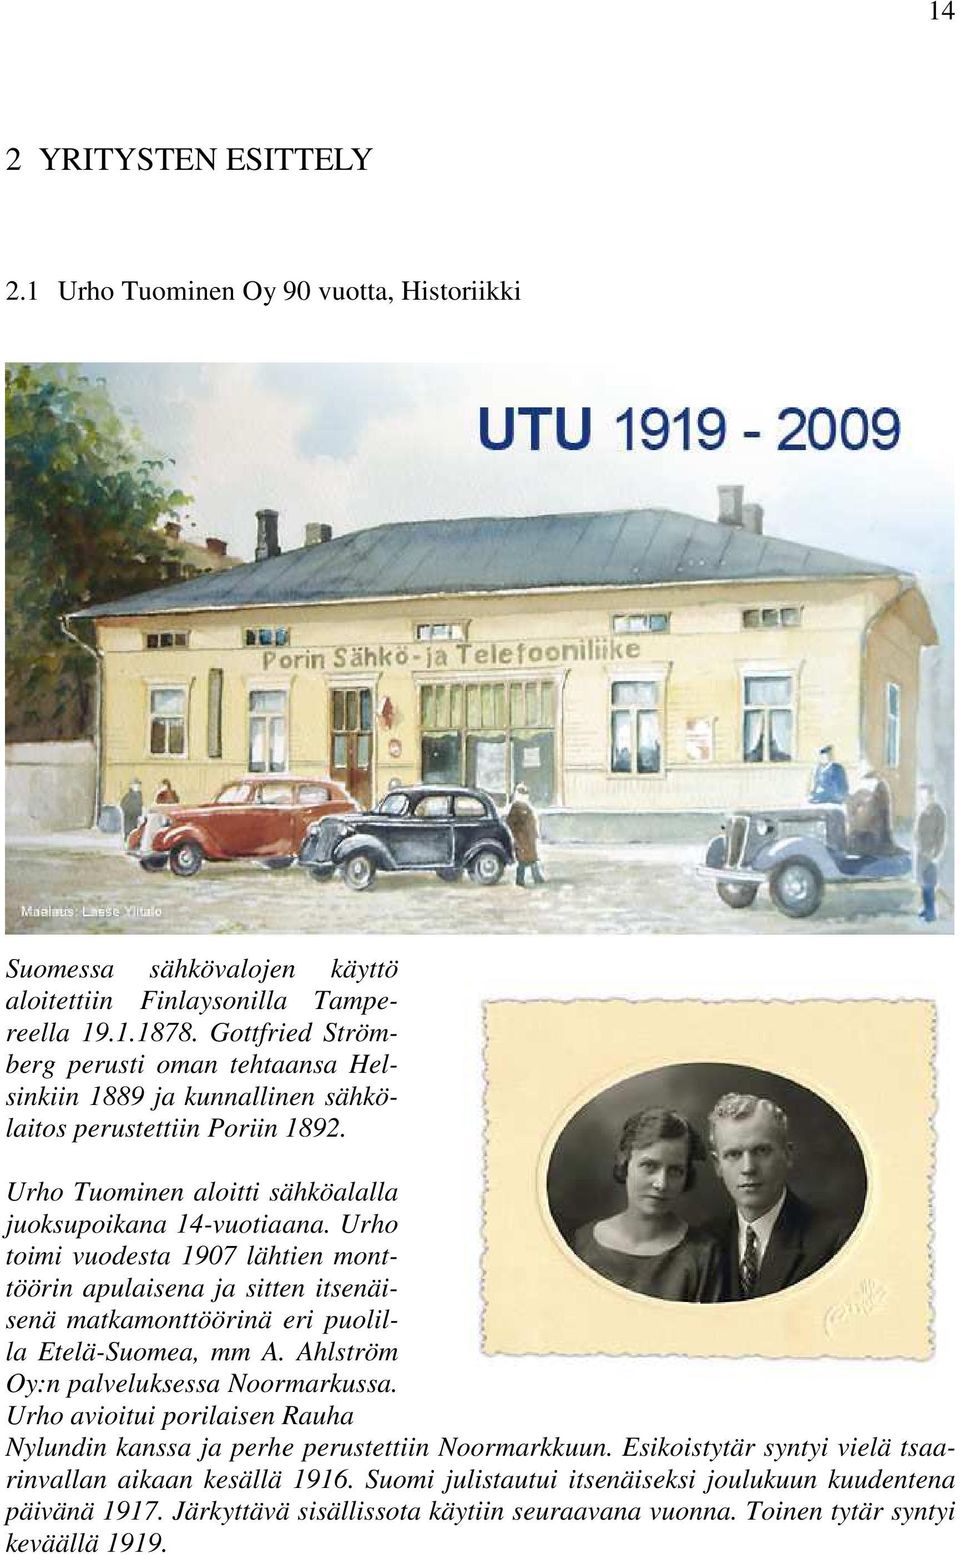 Urho toimi vuodesta 1907 lähtien monttöörin apulaisena ja sitten itsenäisenä matkamonttöörinä eri puolilla Etelä-Suomea, mm A. Ahlström Oy:n palveluksessa Noormarkussa.